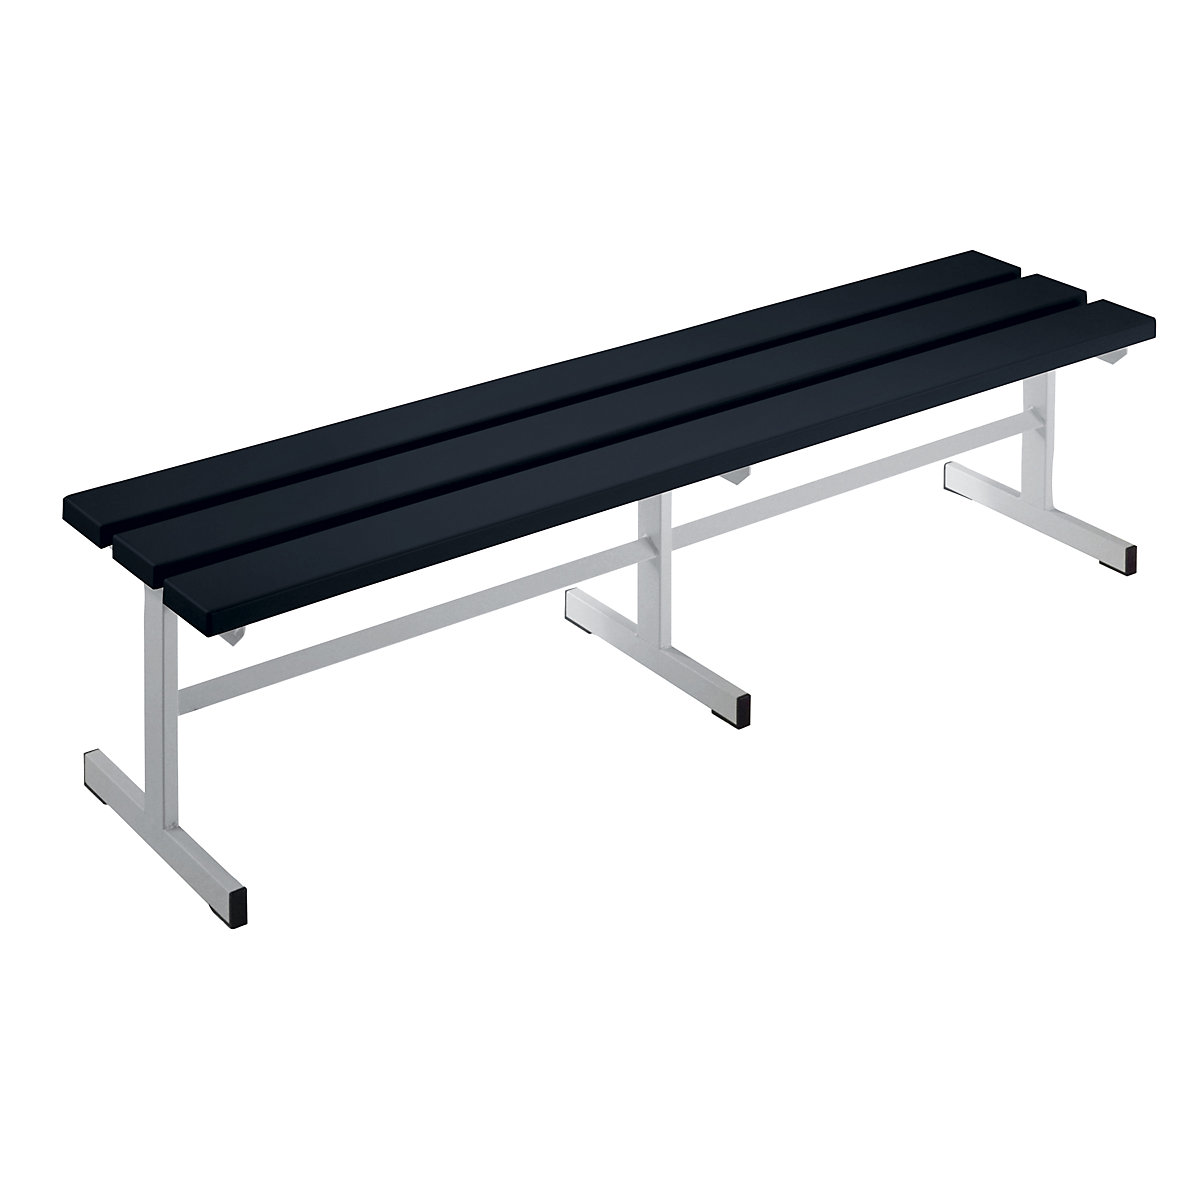 Öltözőpad – Wolf, egyoldalas ülőfelület, fekete, hossz 1500 mm-3